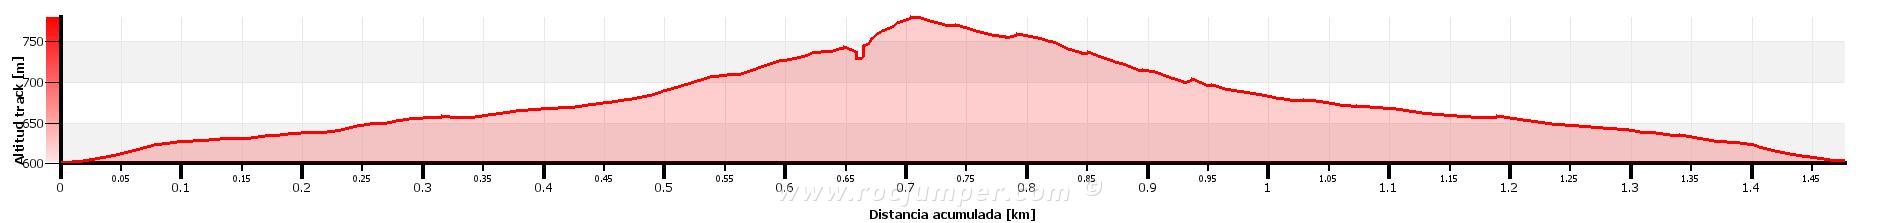 Altimetría - Vía Jordi Carbonell Gesti (Picnic) - Creu de Montmell - Joncosa de Montmell - RocJumper